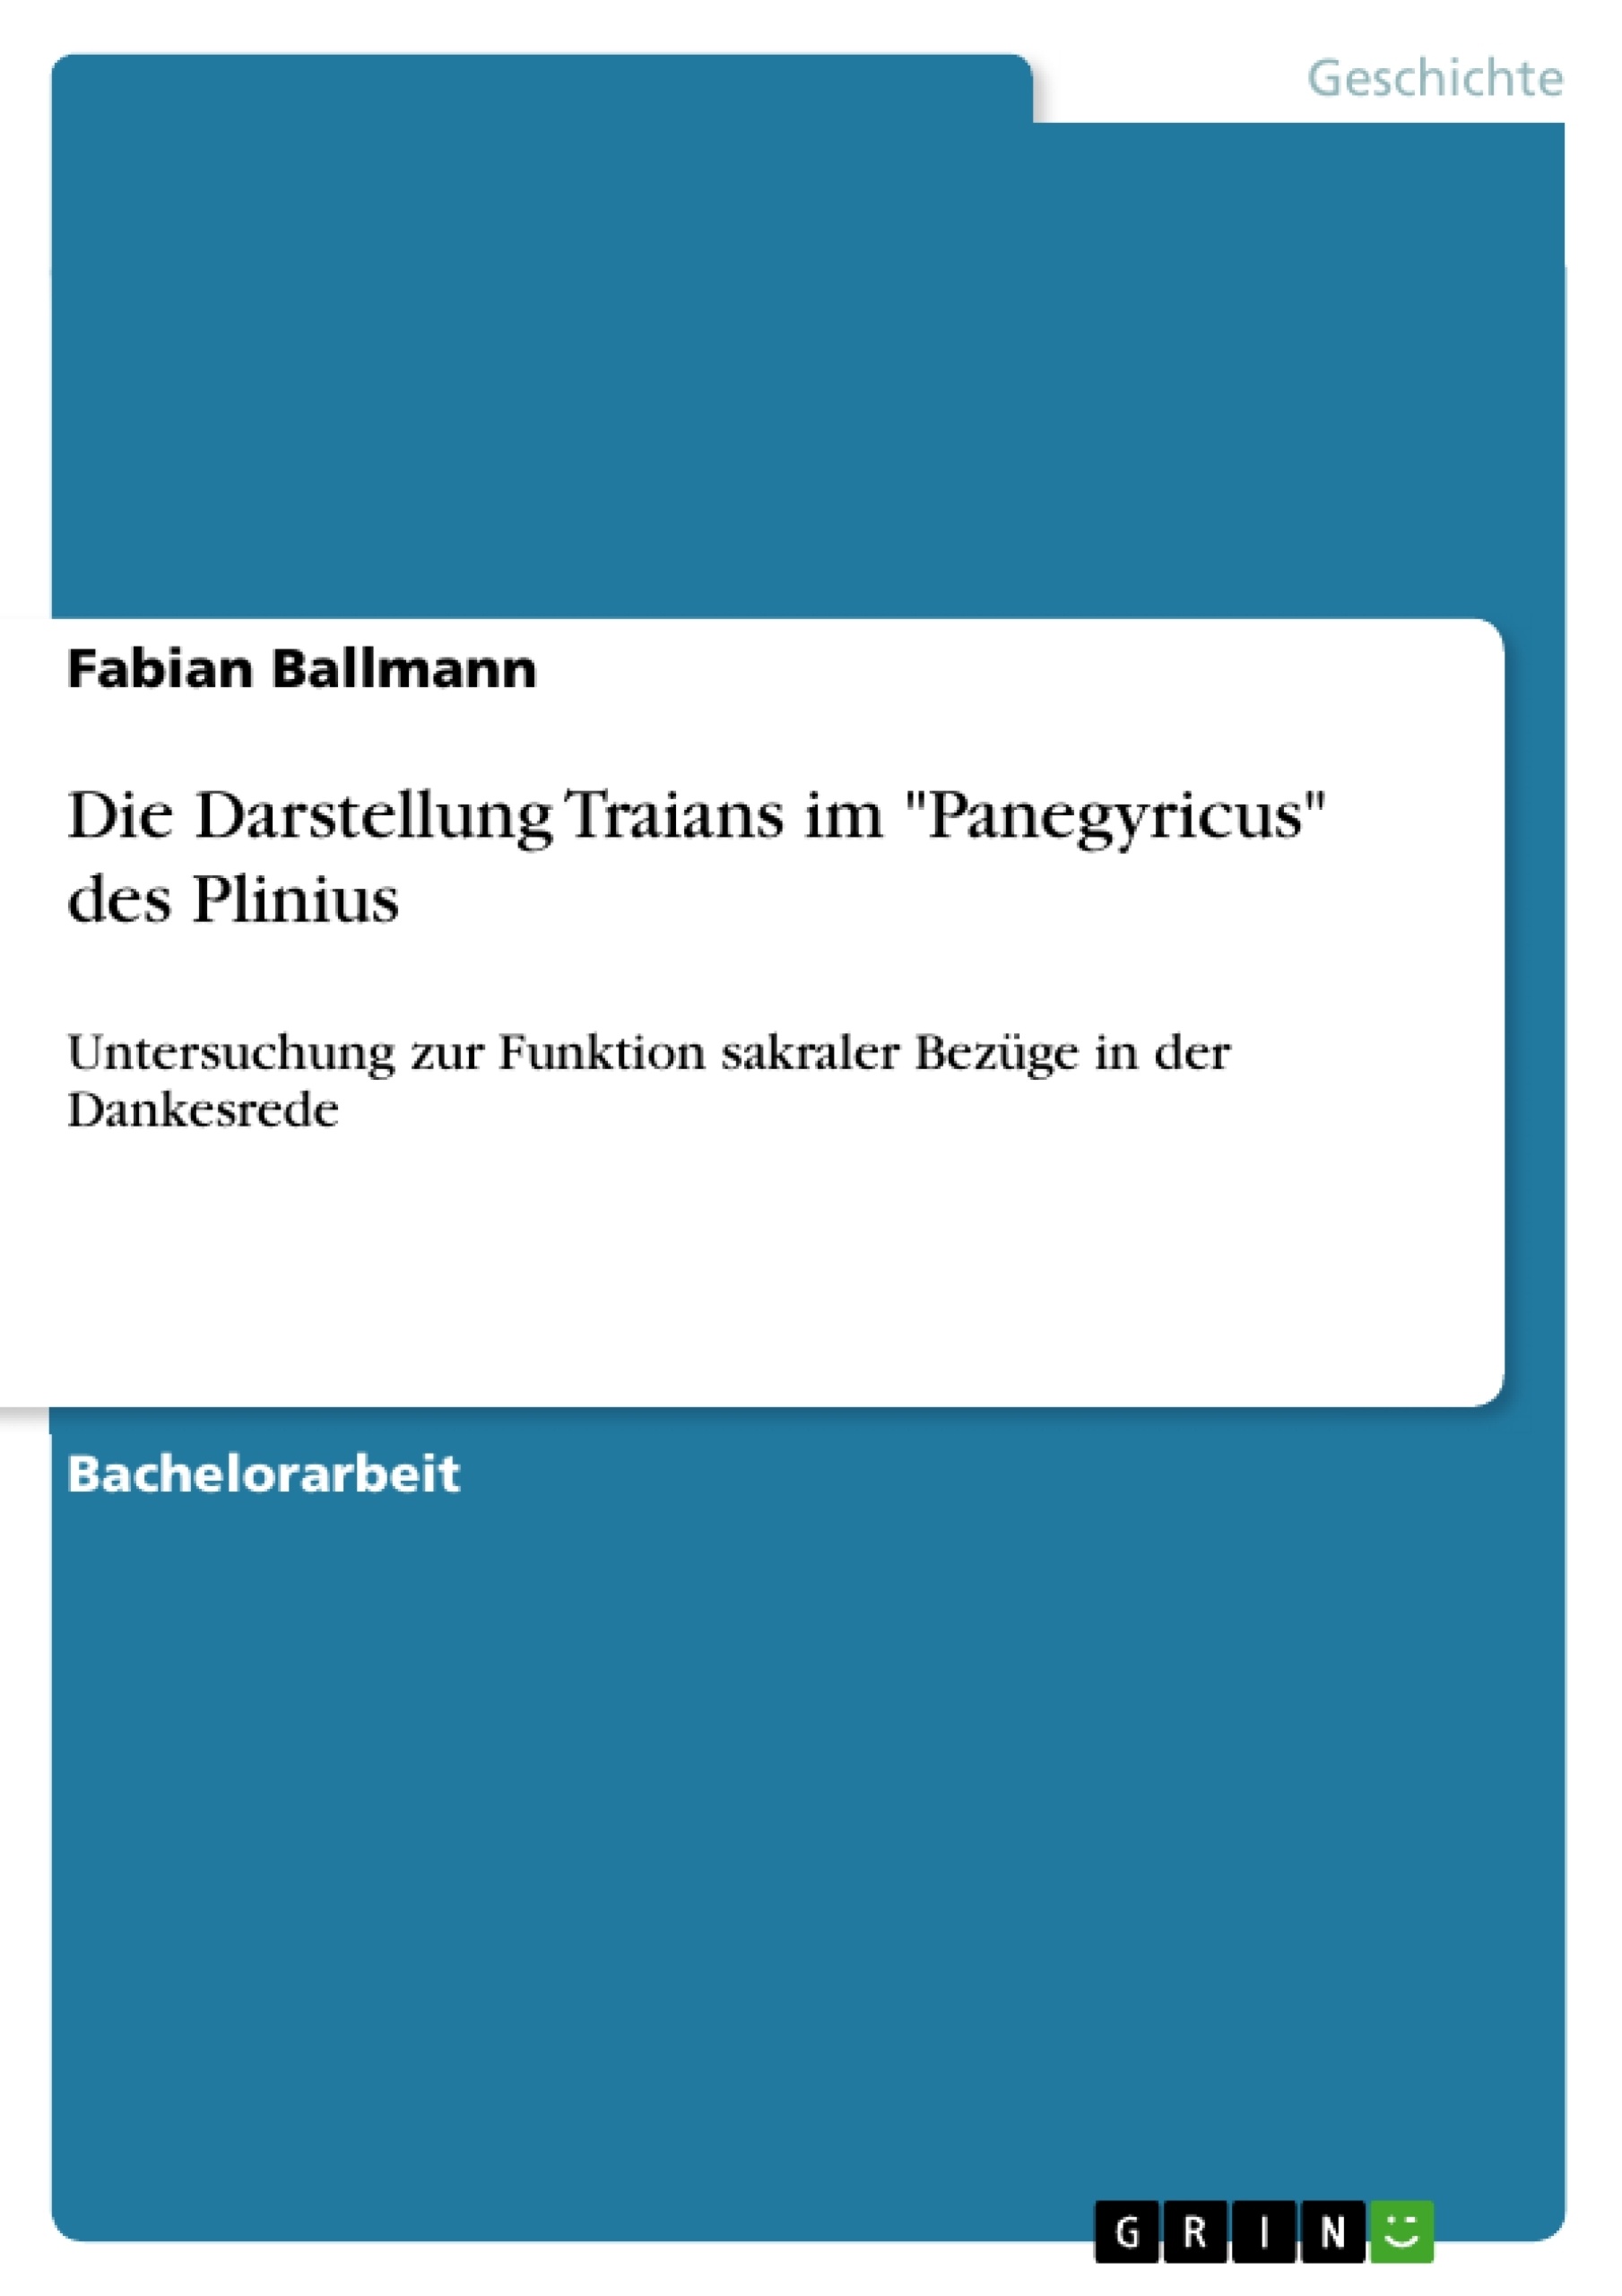 Título: Die Darstellung Traians im "Panegyricus" des Plinius